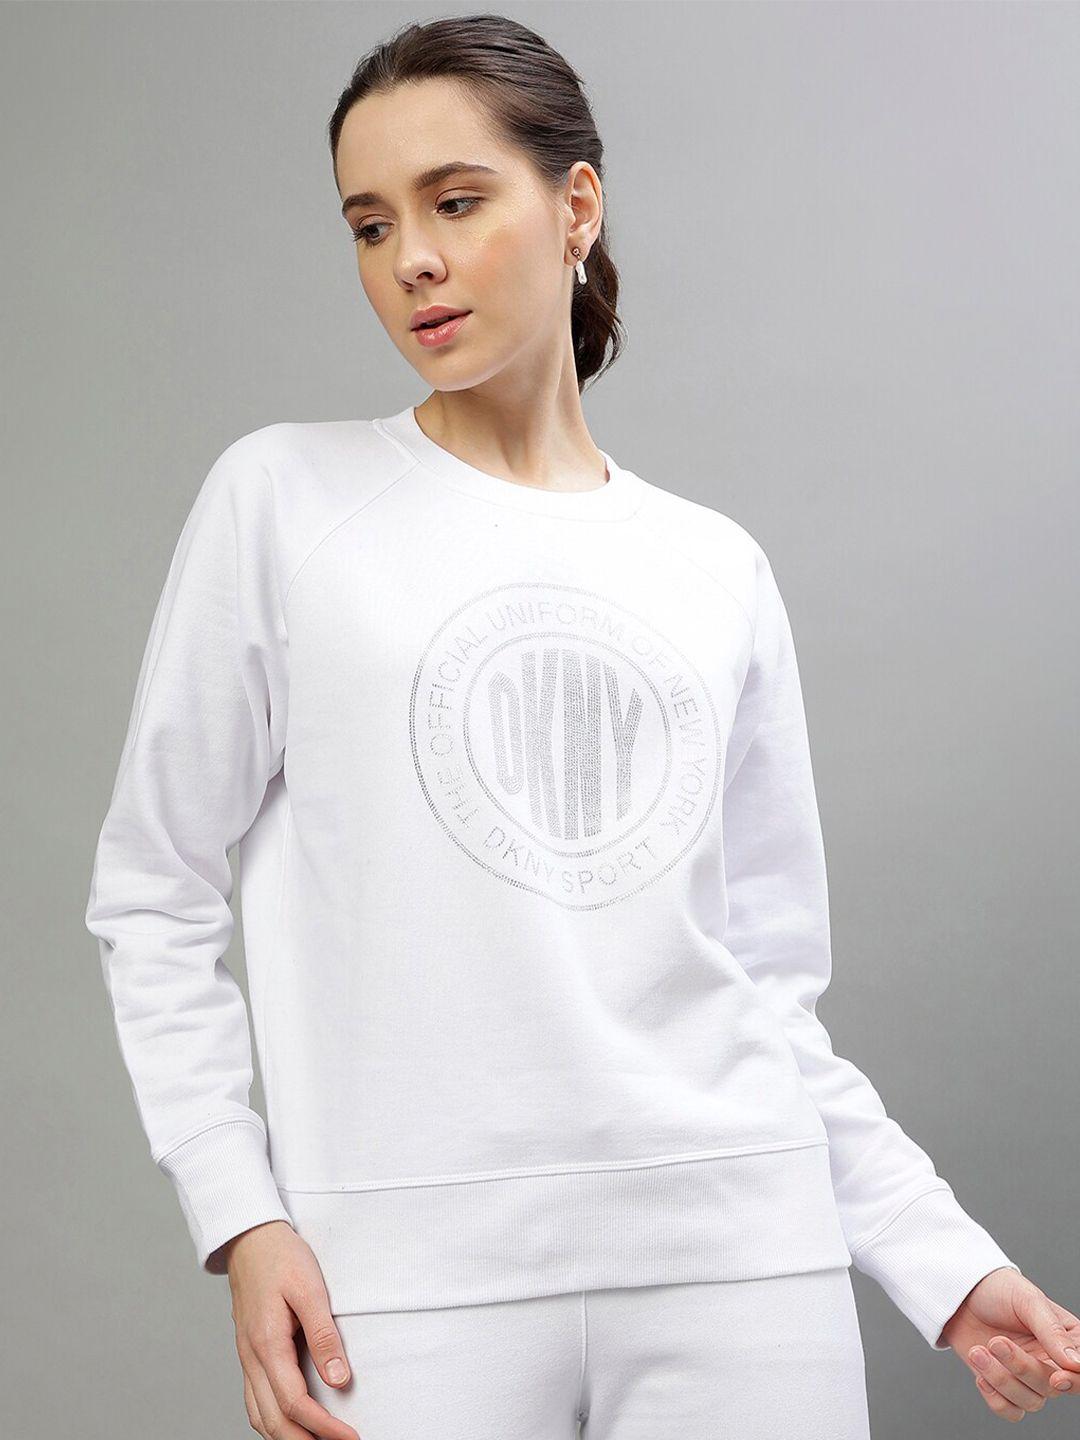 dkny typography printed hood long sleeves pullover sweatshirt